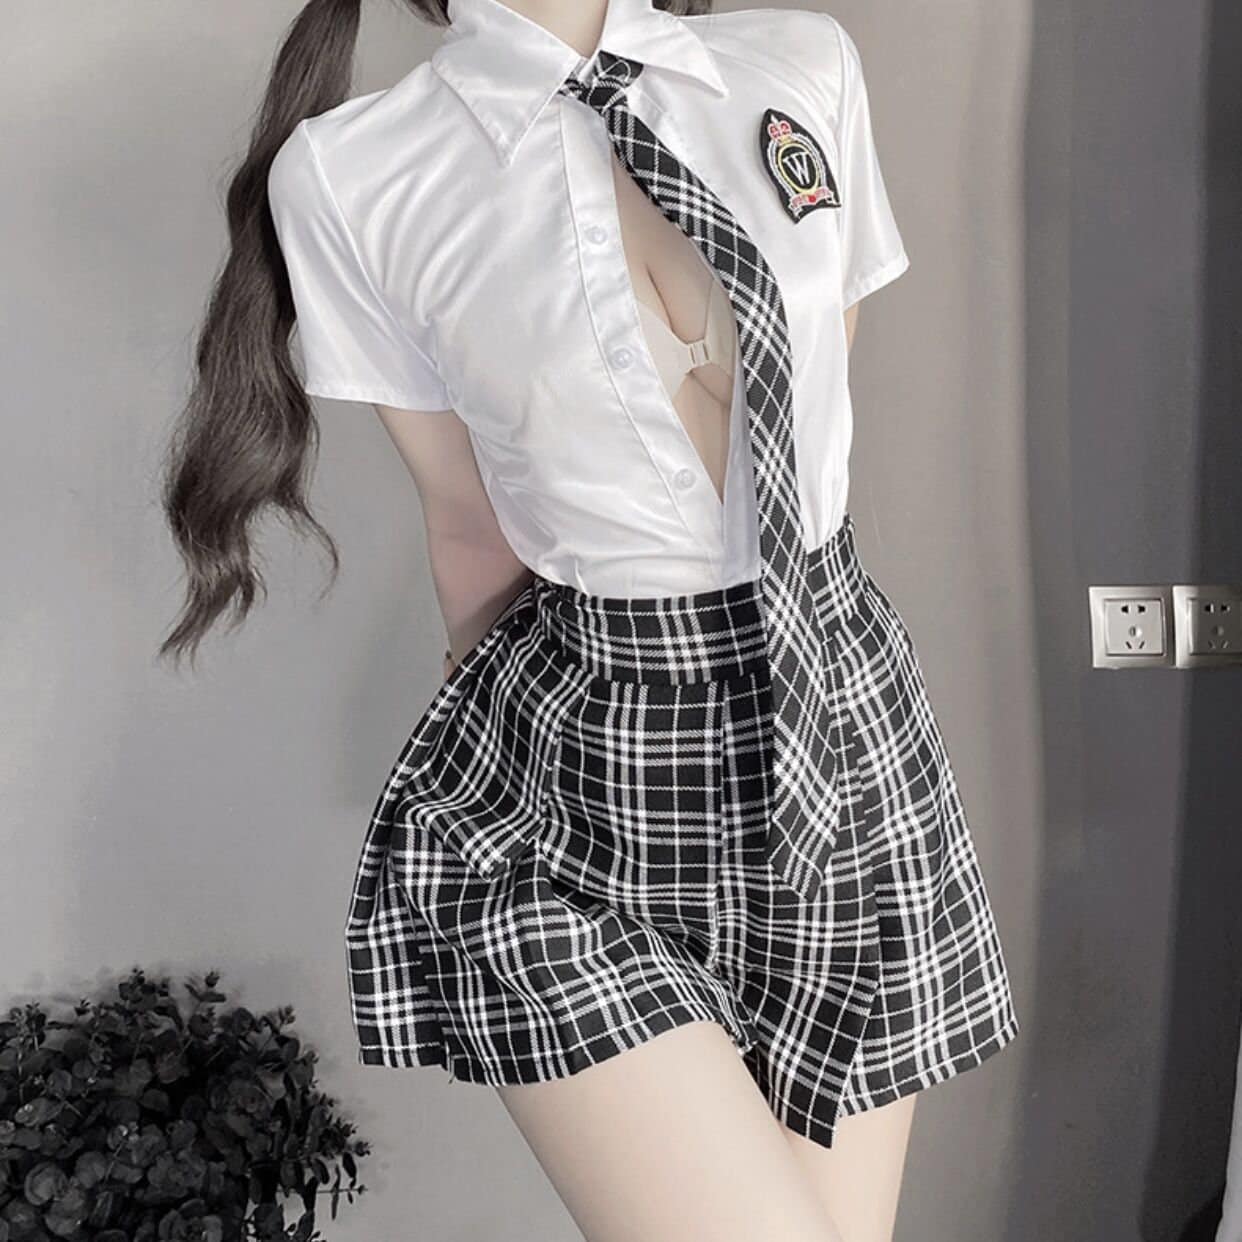 Asian Schoolgirl Pussy - Schoolgirl Cosplay - Etsy